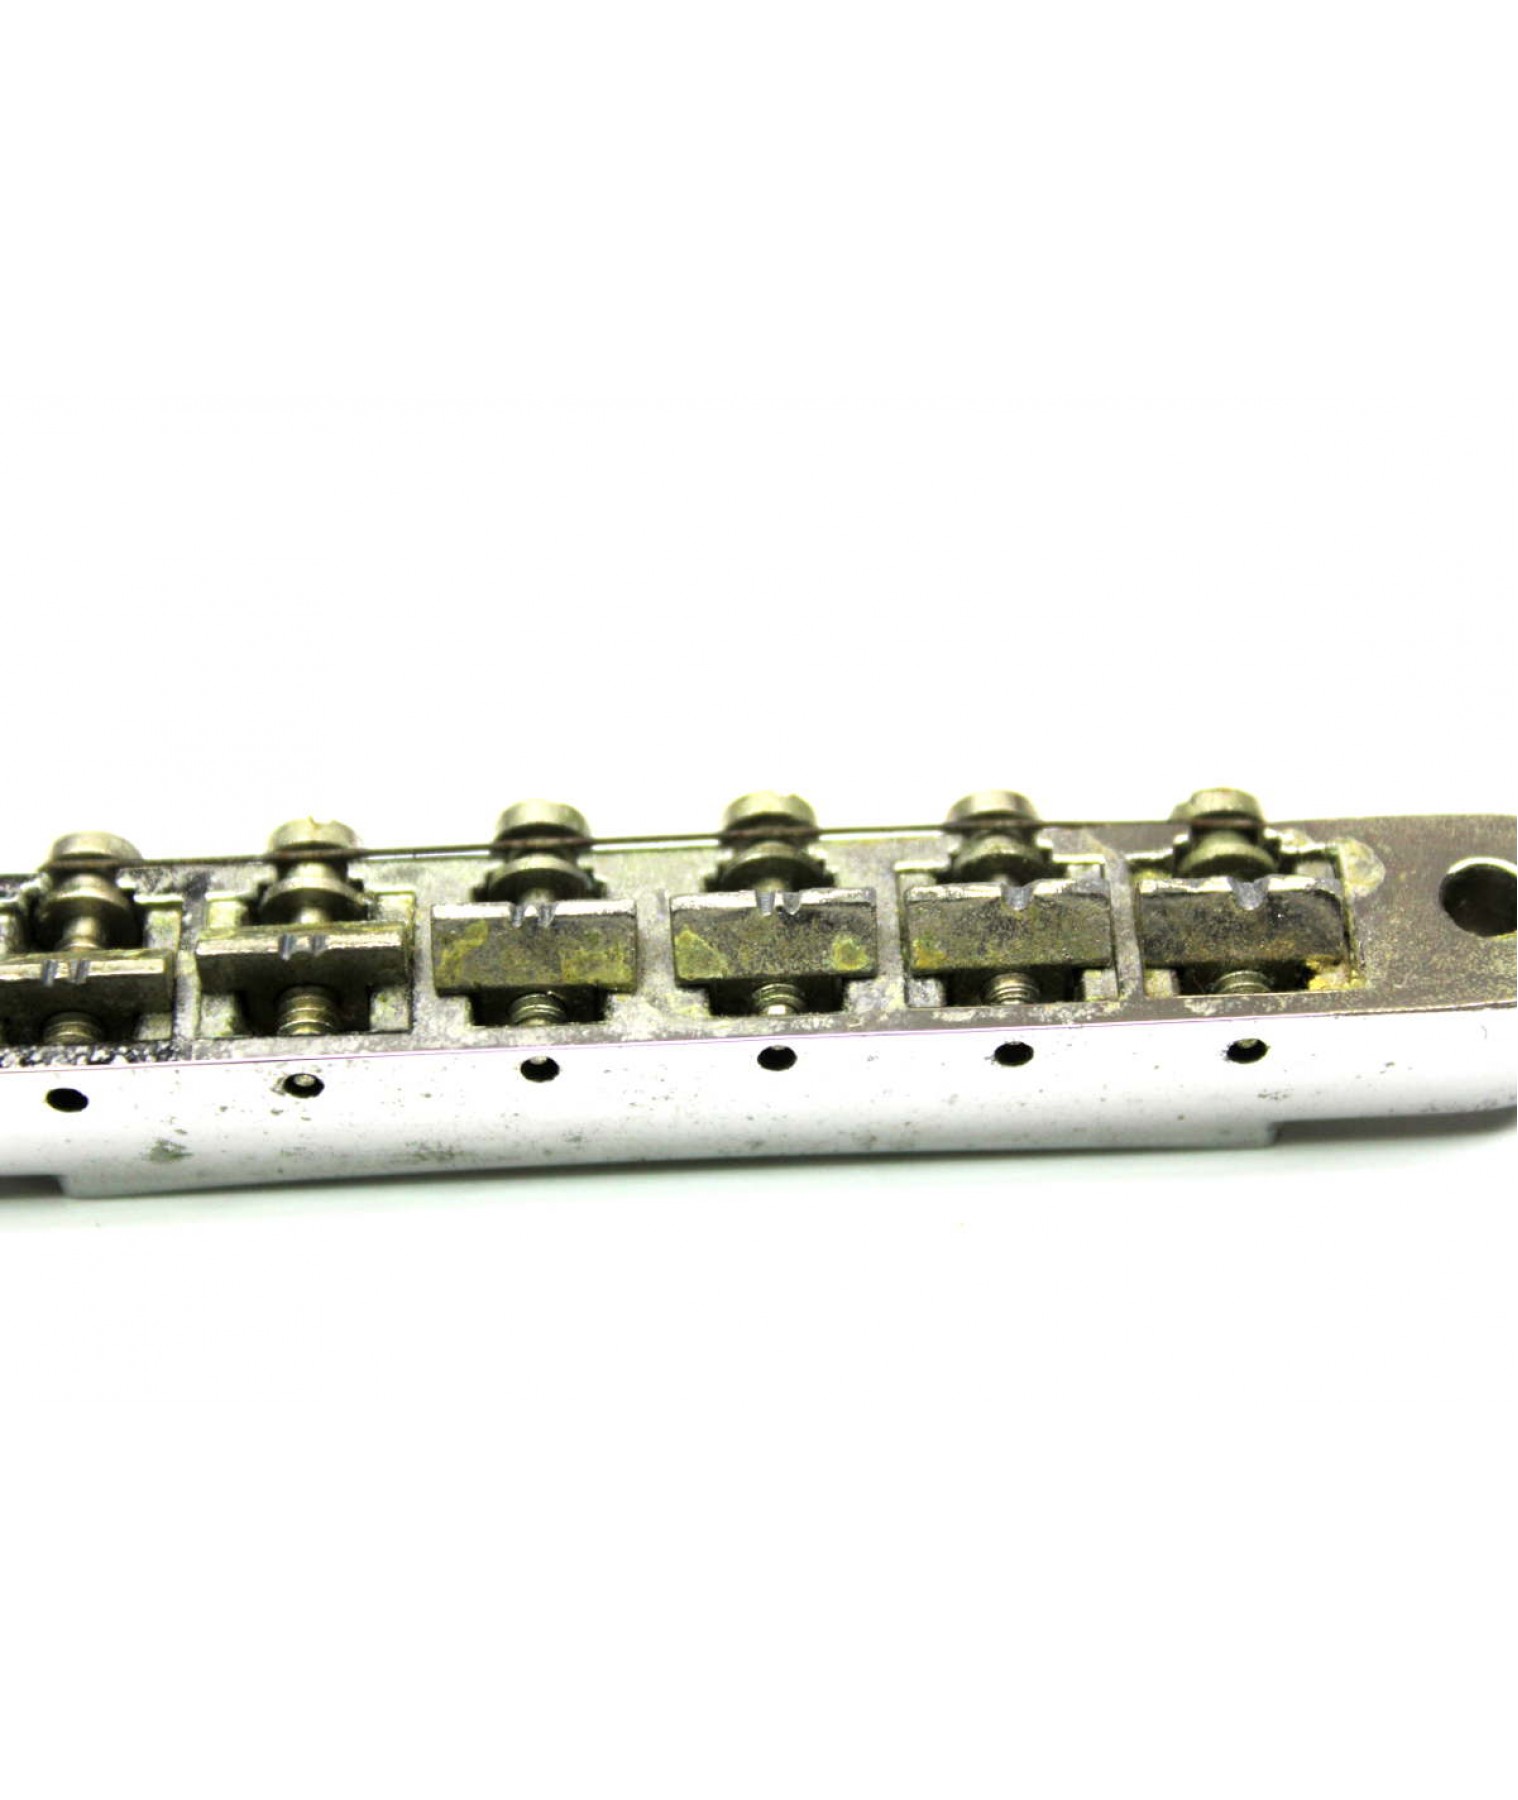 1970s Gibson Tune-o-matic ABR-1 Bridge -Patent 2.740.313